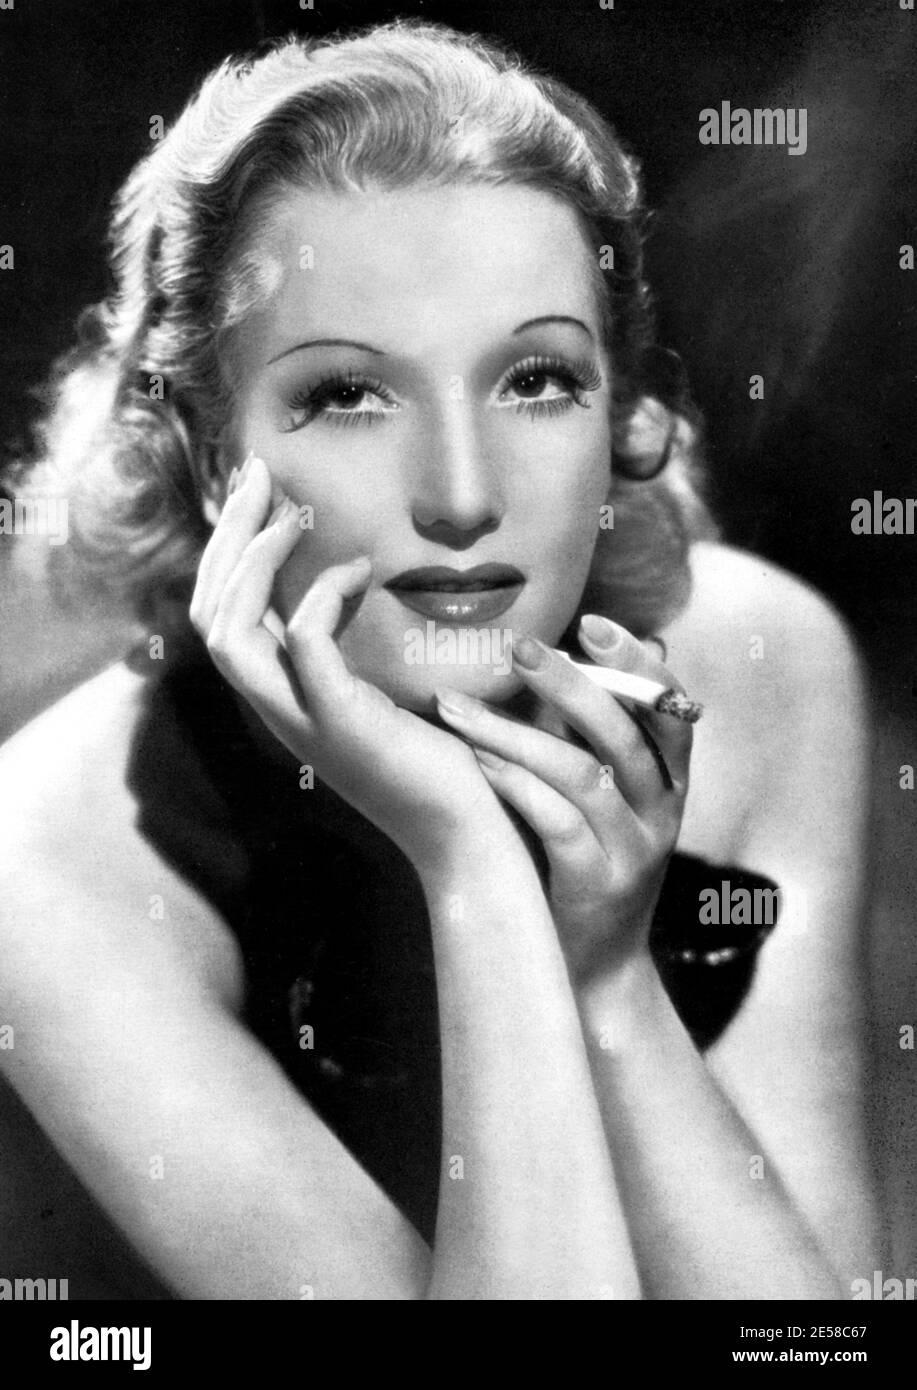 1939 , USA : la celebre attrice cinematografica italiana ISA MIRANDA ( 1905 - 1982 ) , Nascita nome Ines Isabella Sampiero ,in una publicity girata a Paramount Studios durante il suo periodo hollywoodiano - FILM - CINEMA - FILM - attrice - femme fatale - mani - mano - mani - boldie - capelli biondi - bionda - capelli biondi - attrice attori che Fumano - che fuma - fumatore - fumatrice - sigaretta - sigaretta - personalità personalità attori Smok - Smoker - Smokers - sigaretta --- Archivio GBB Foto Stock